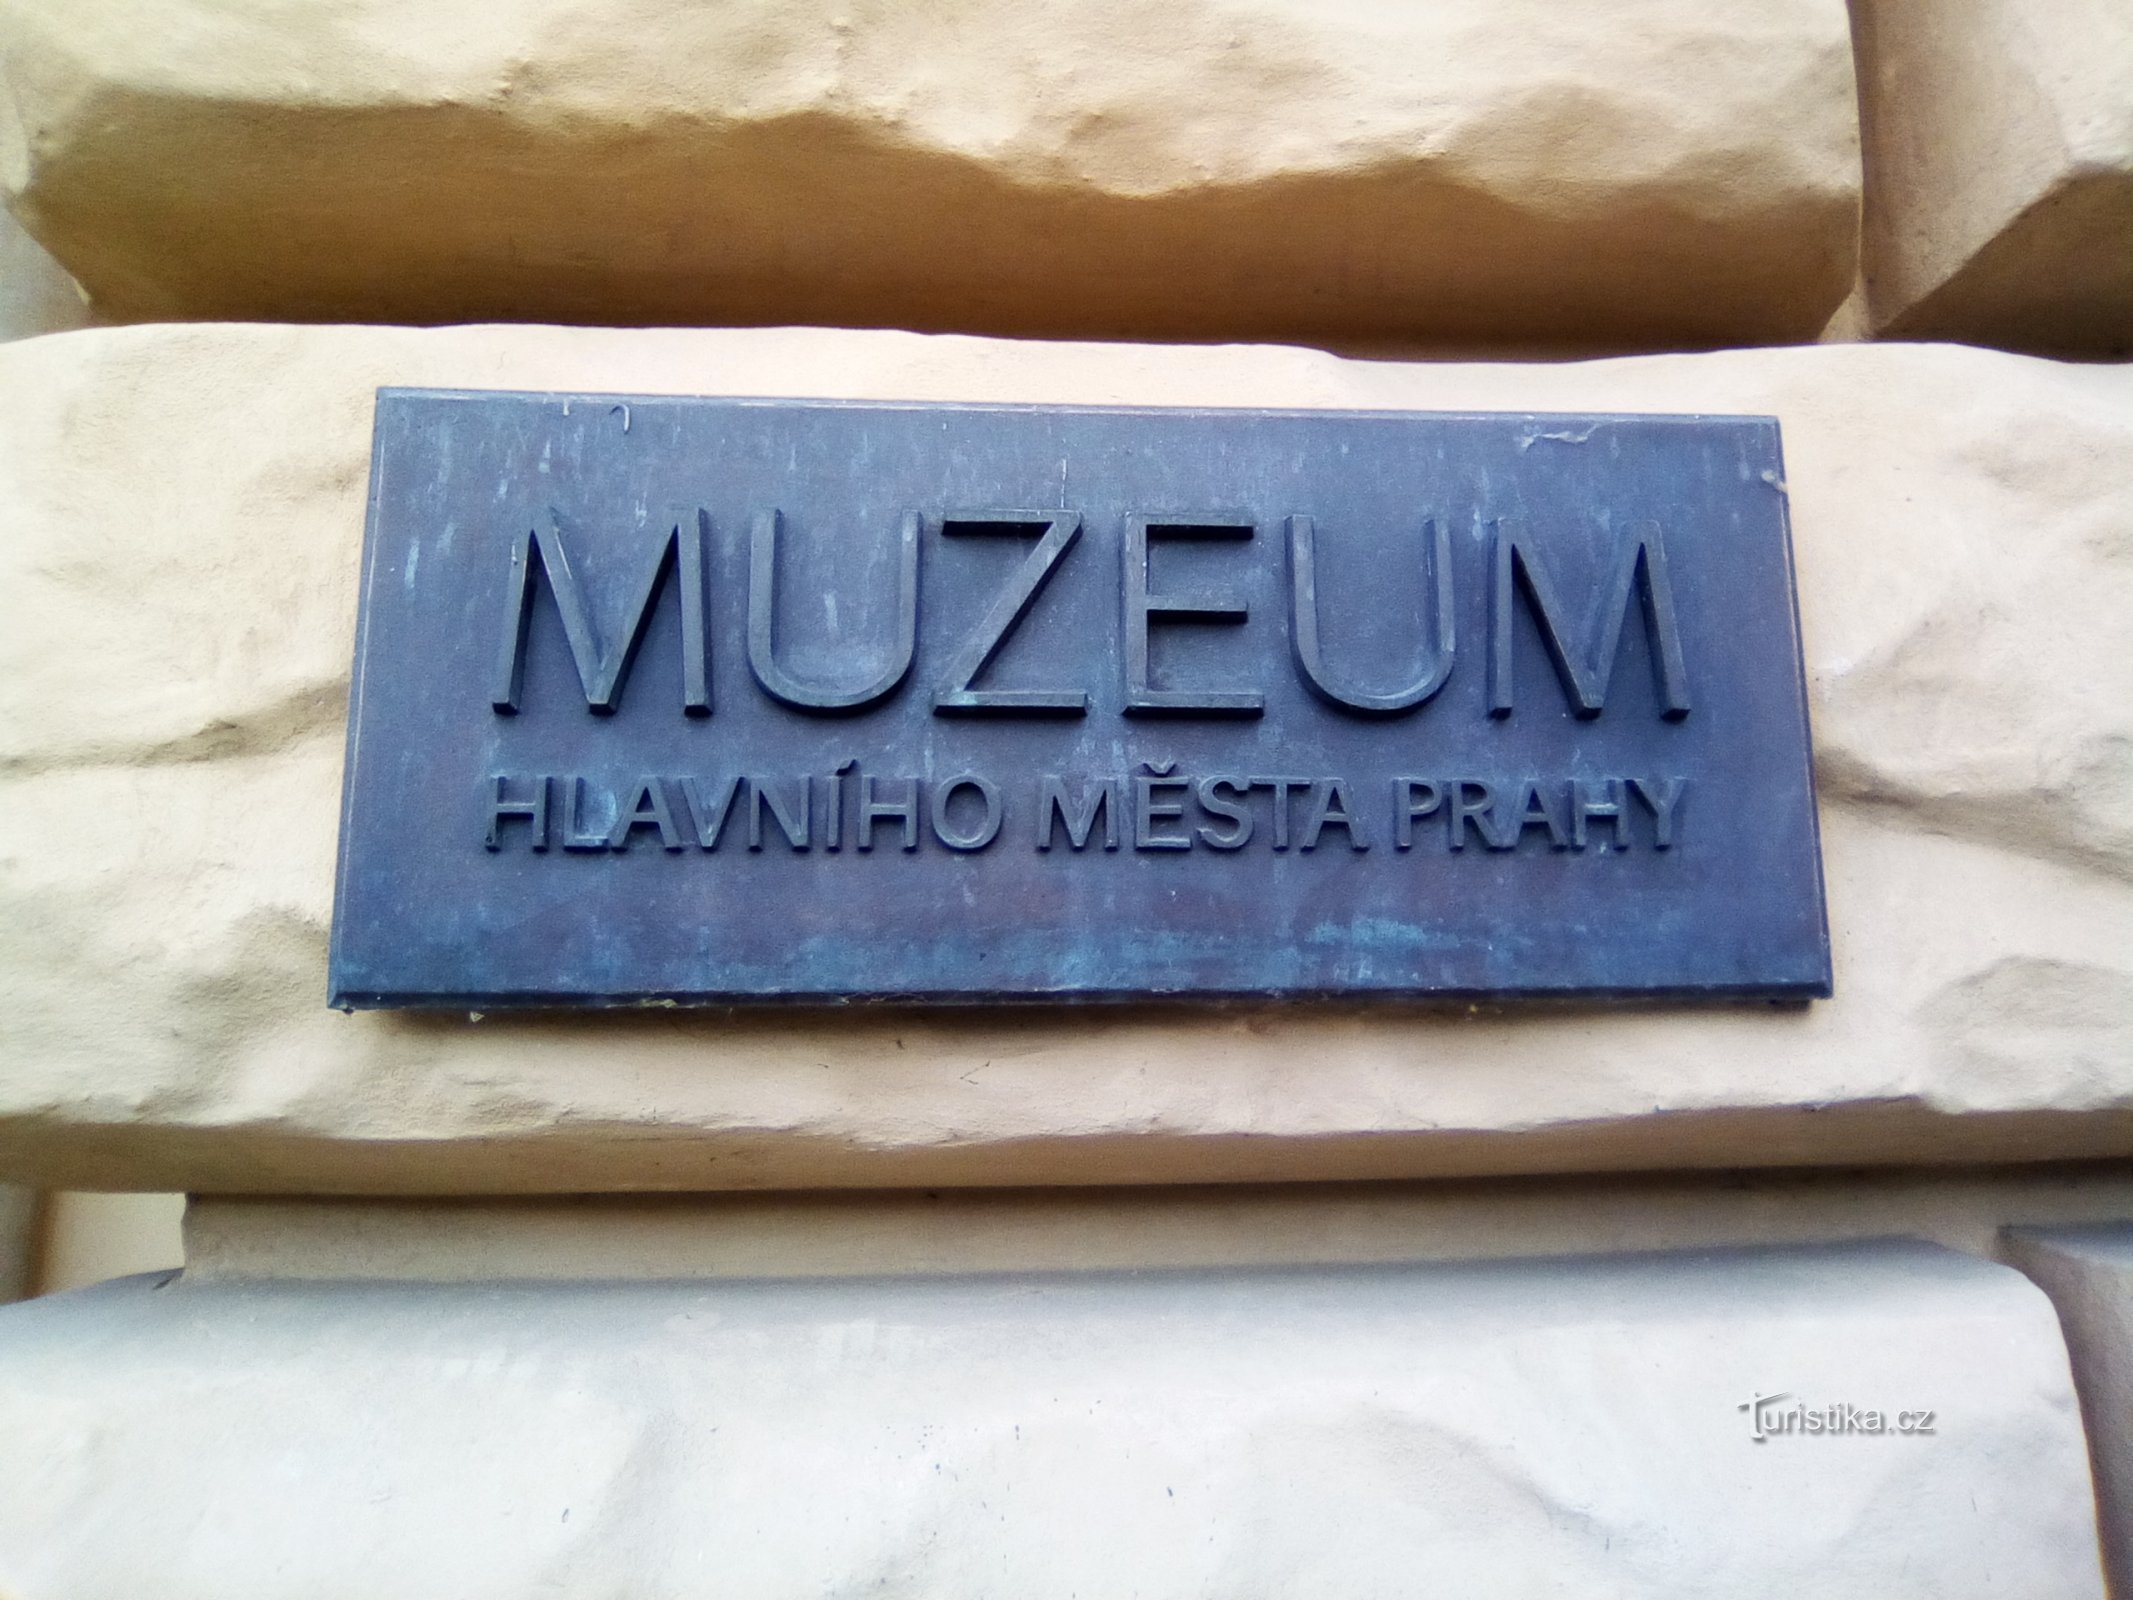 Muzej glavnega mesta Praga